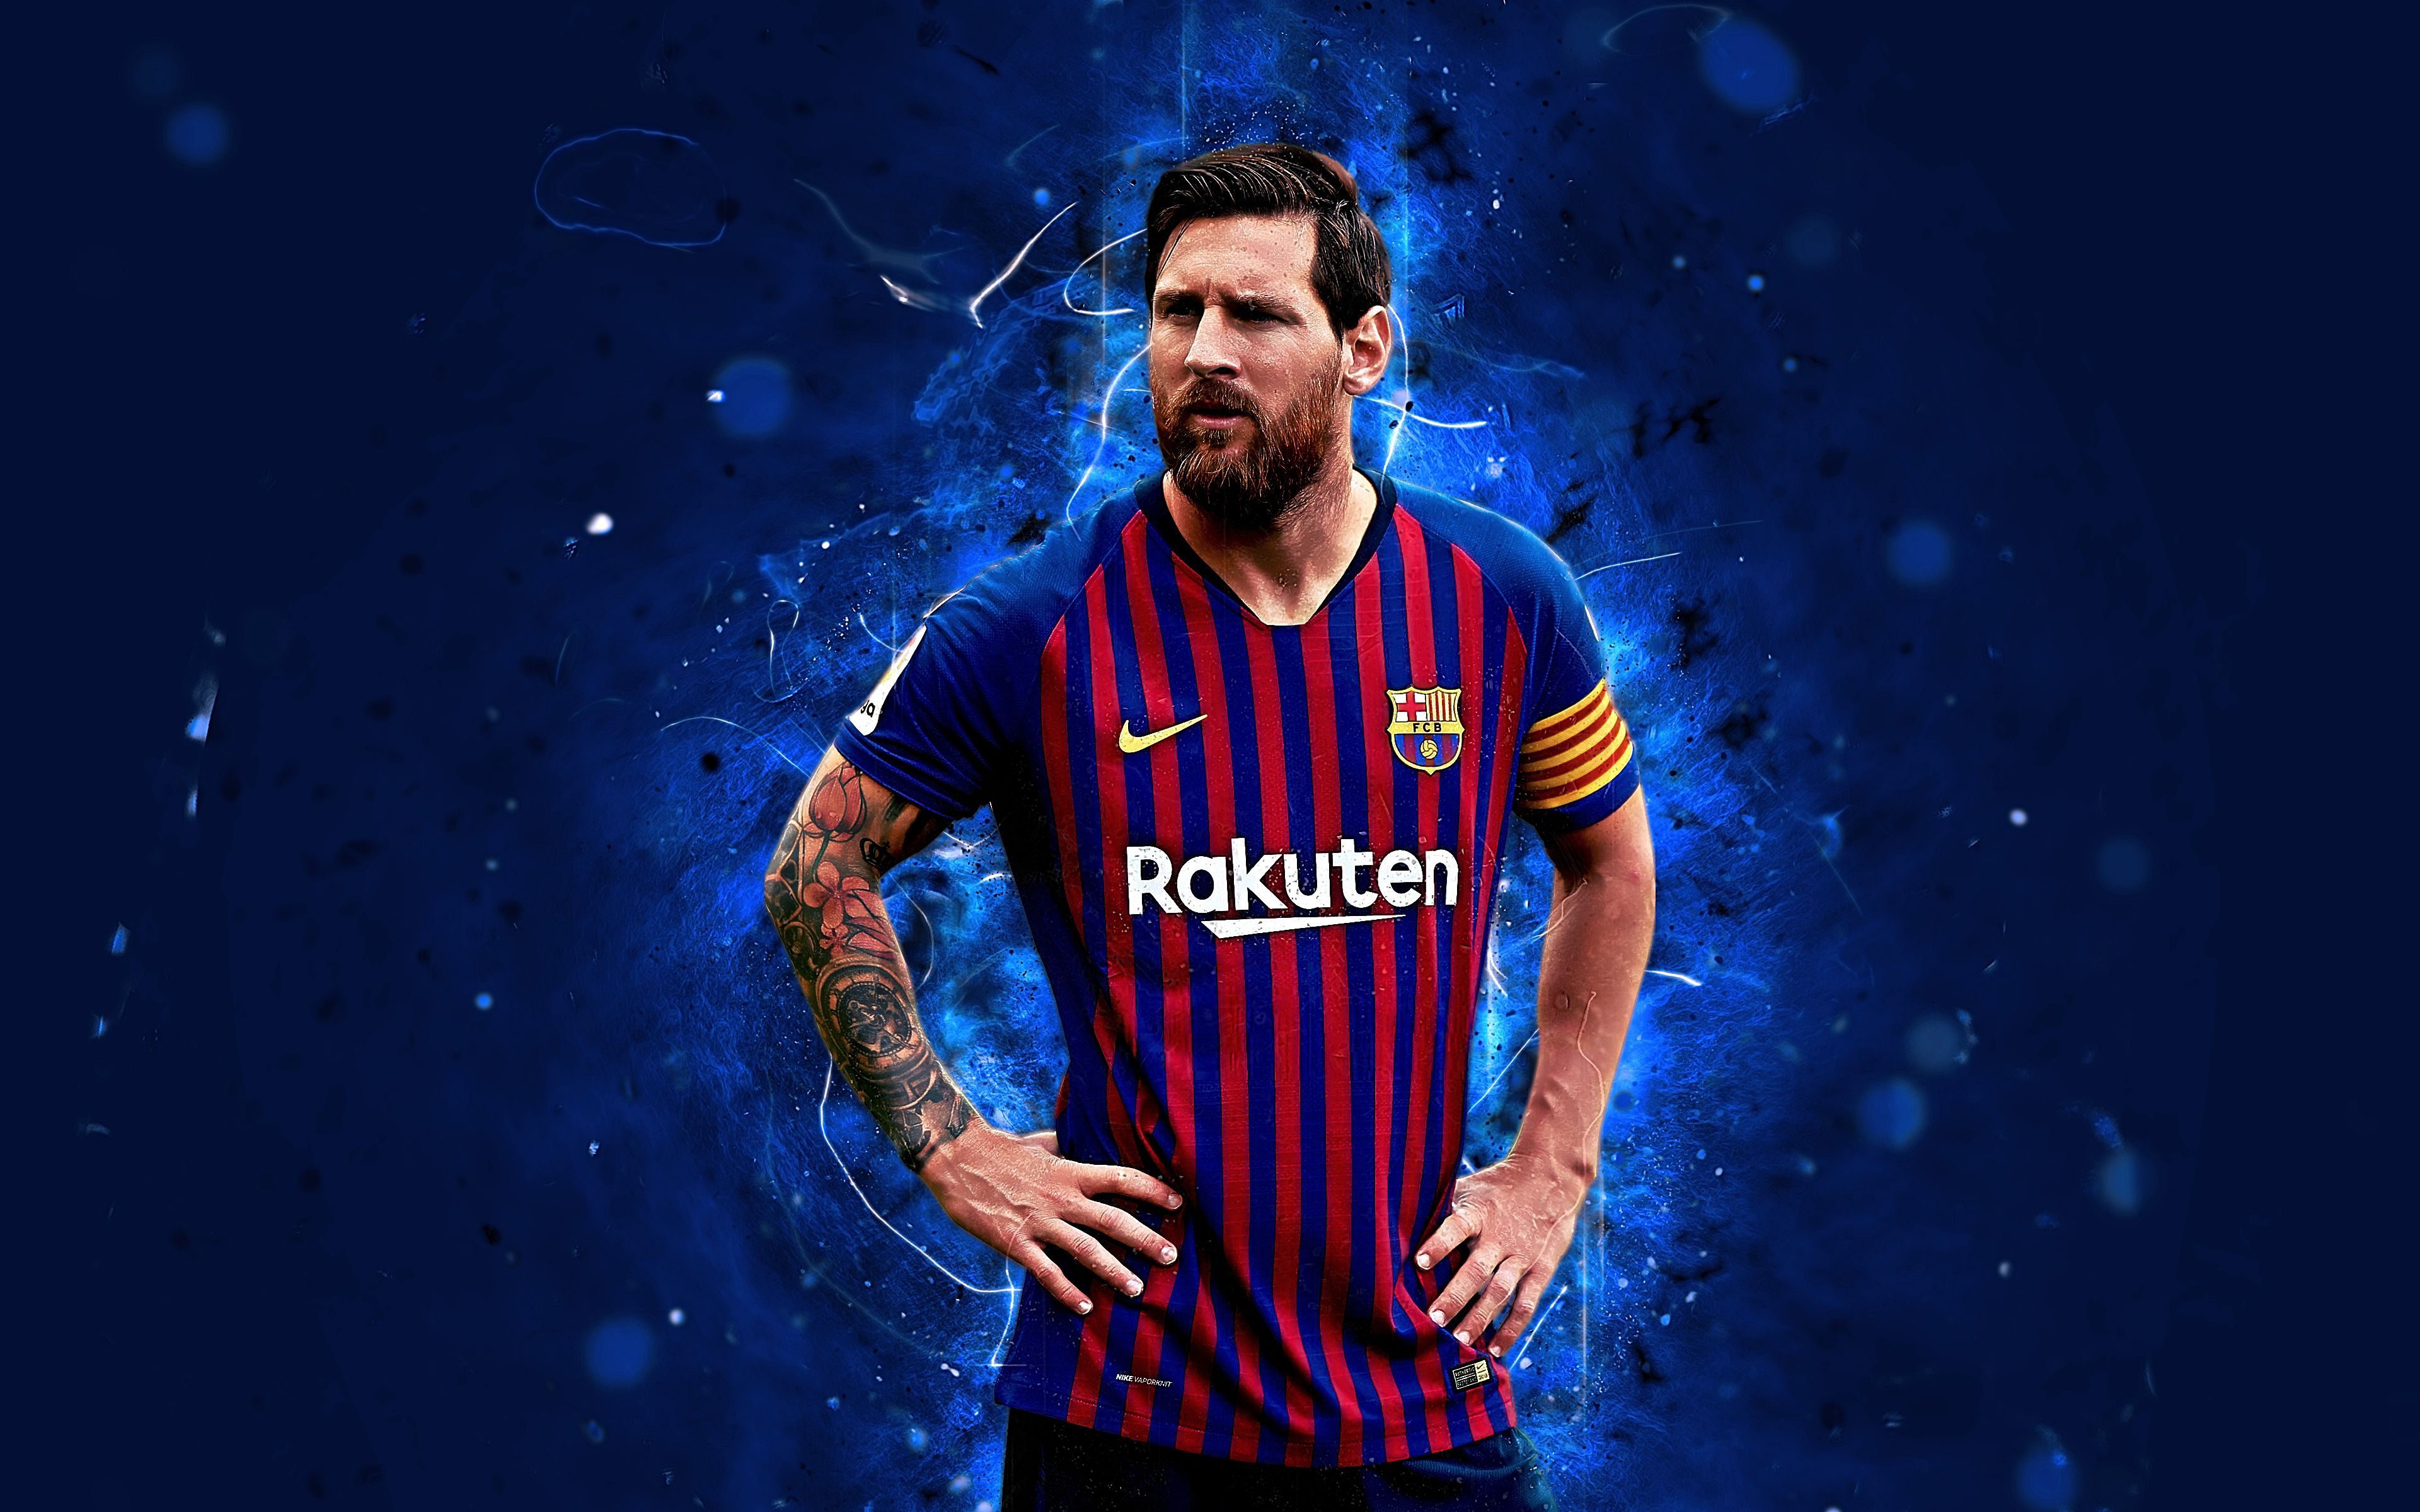 Bộ sưu tập ảnh Messi 4K: Ôn lại những khoảnh khắc không thể quên với bộ sưu tập ảnh Messi 4K. Với chất lượng hình ảnh tuyệt vời, bạn sẽ được chiêm ngưỡng những cú sút phạt hoàn hảo và những pha bóng ấn tượng của cầu thủ vĩ đại này. Hãy tận hưởng trọn vẹn mọi khoảnh khắc của cầu thủ huyền thoại này.